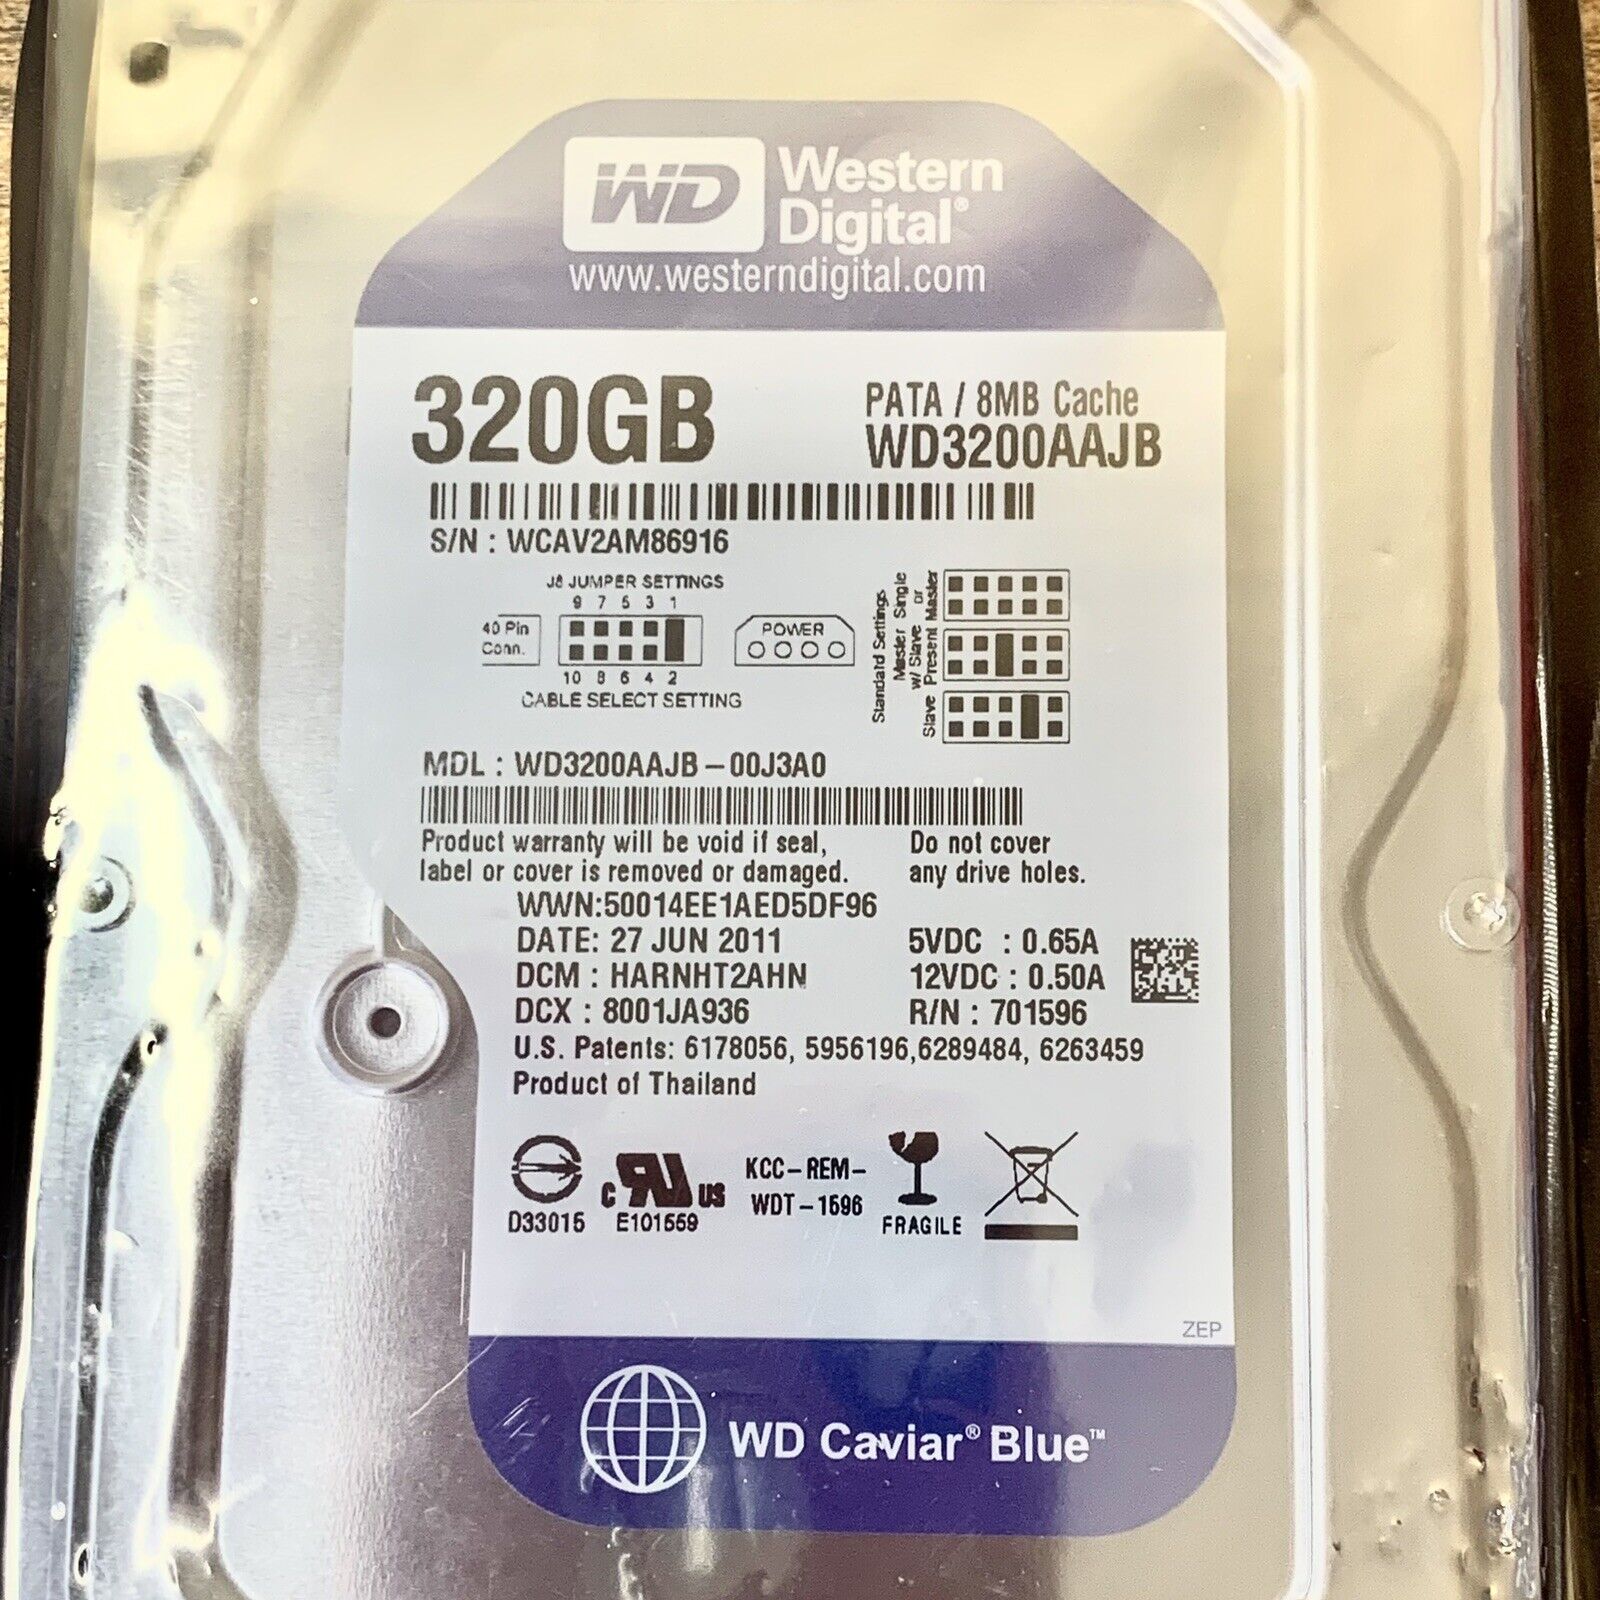 Original Western Digital 320GB WD3200AAJB 7200RPM PATA IDE Hard Disk Drive - NEW